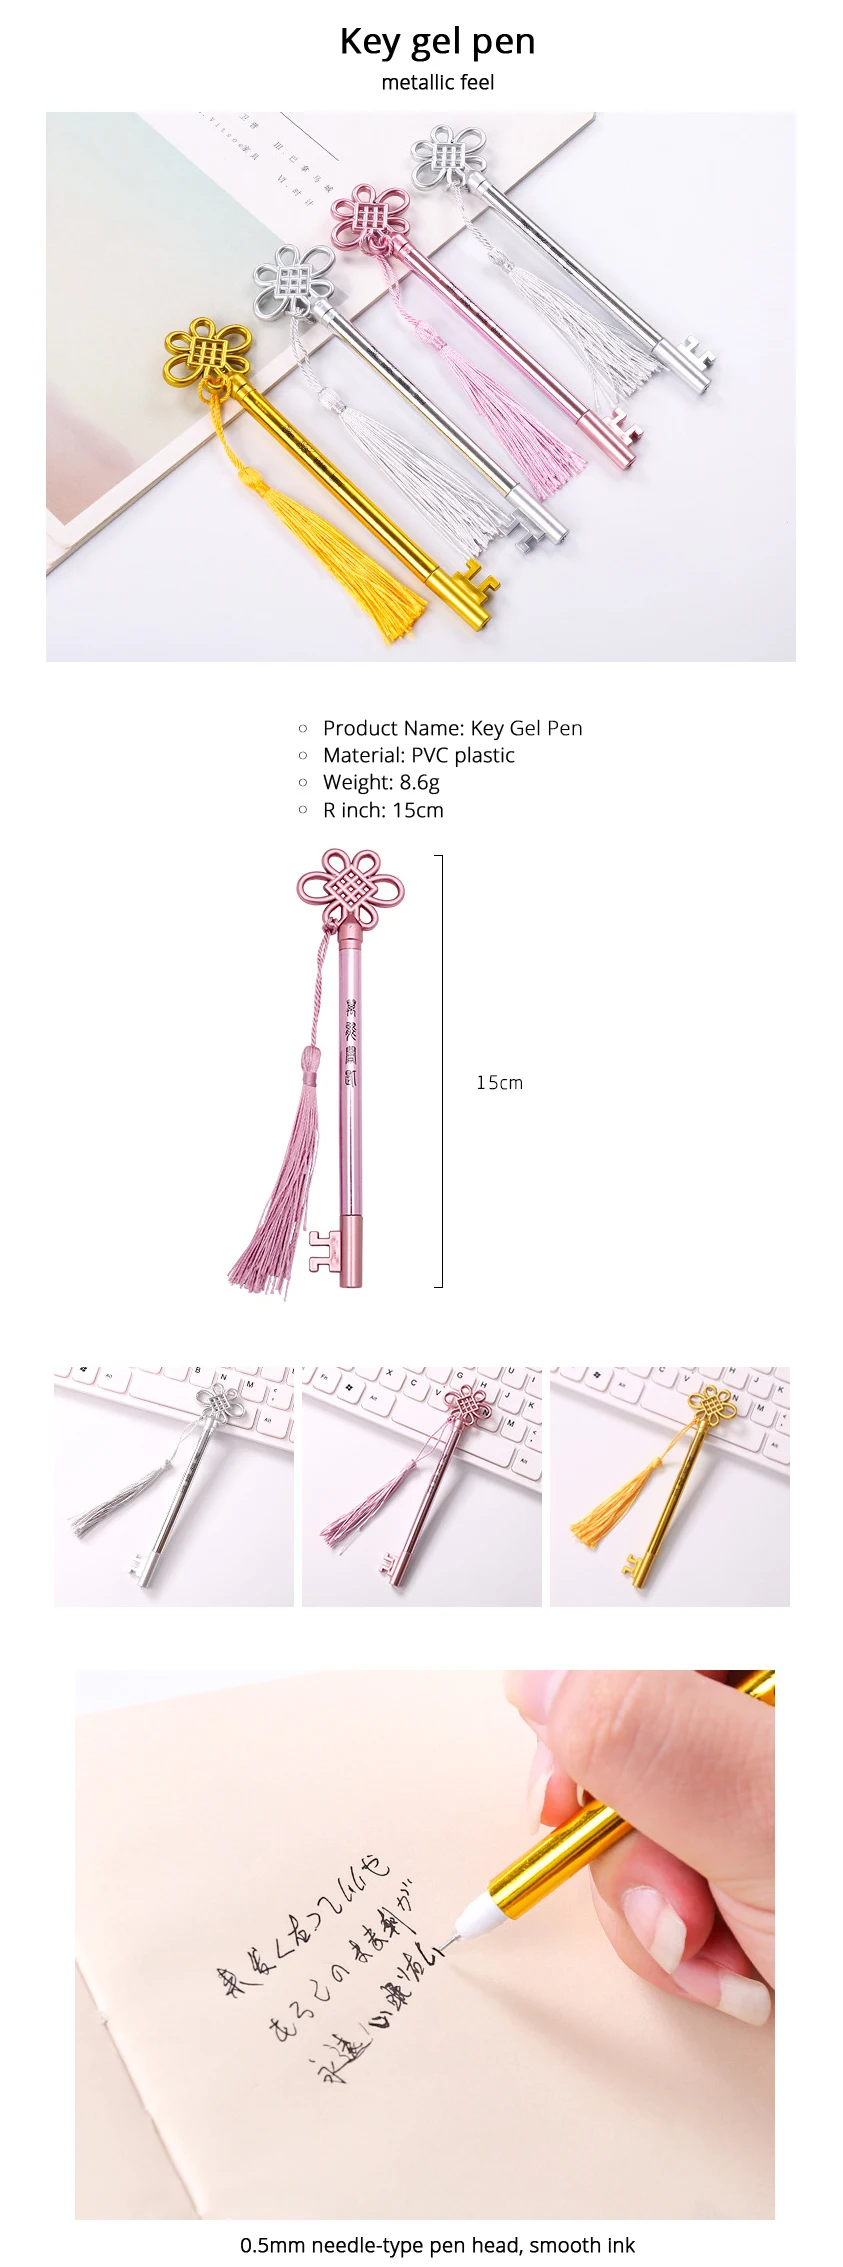 3 шт./лот китайский узел ключи гель для дизайна ручка Набор Kawaii канцелярские ручки пластиковый материал Escolar офисные школьные принадлежности стационарные